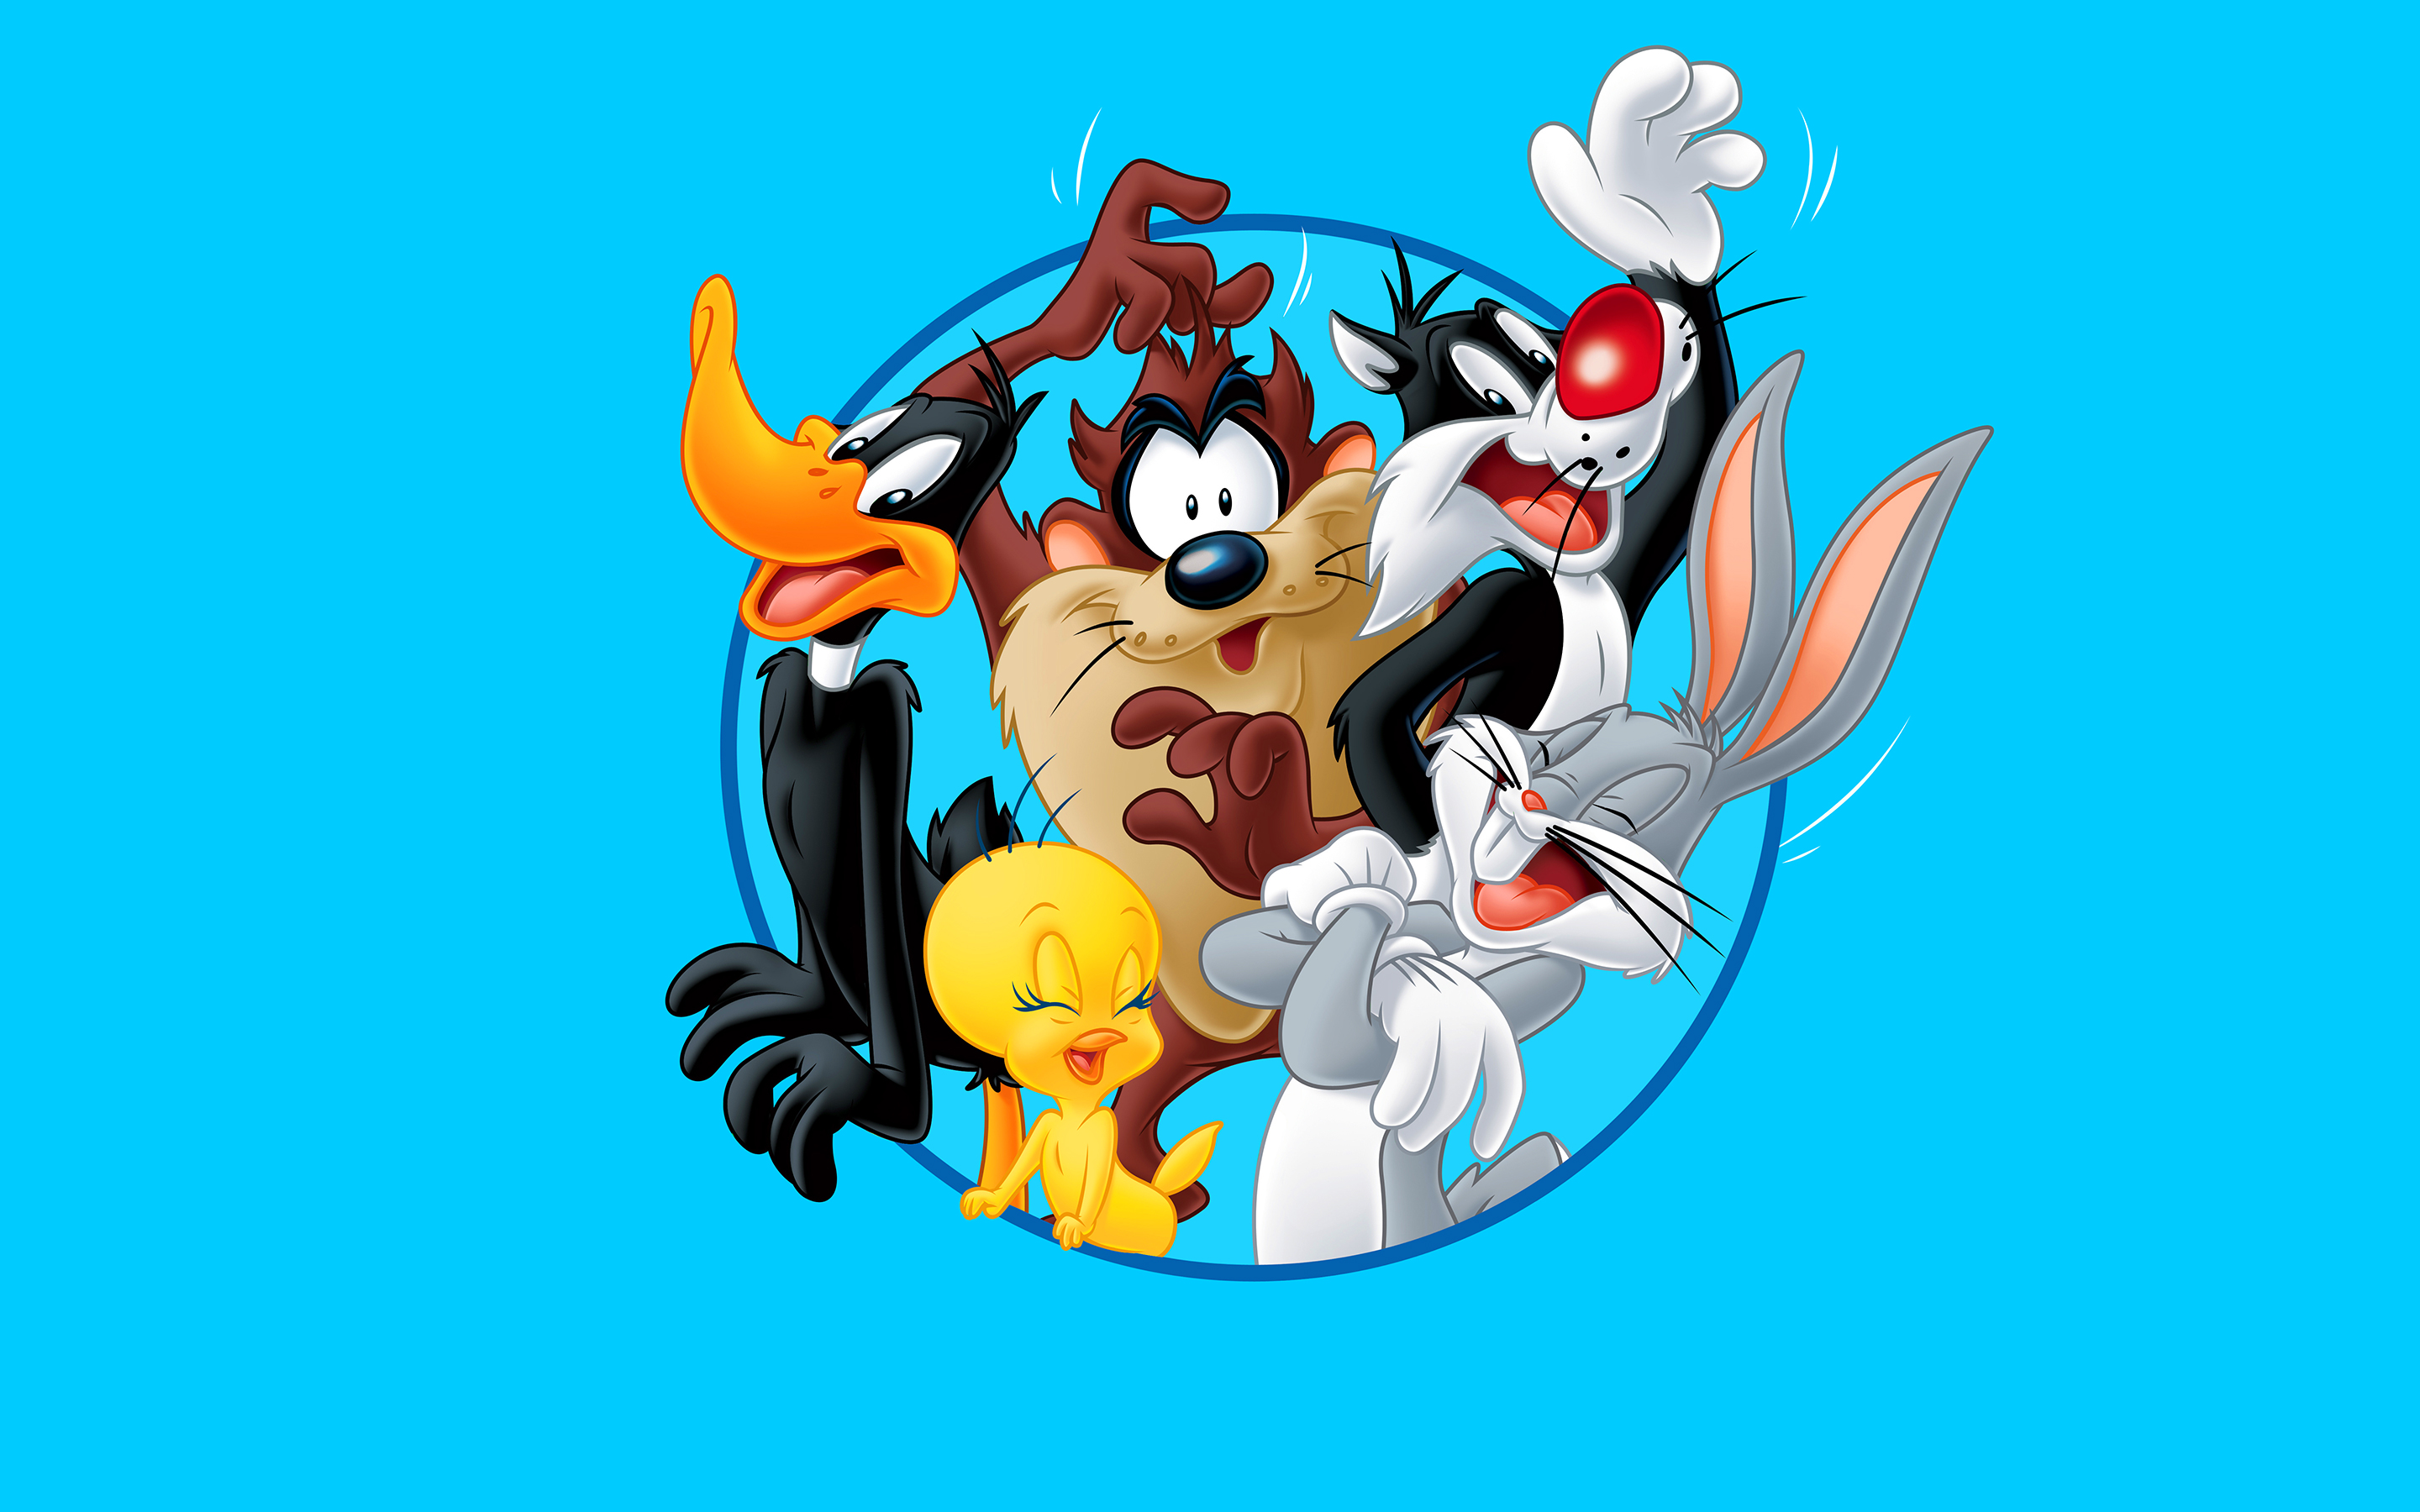 Blue Bugs Bunny Cartoon Daffy Duck Looney Tunes Sylvester Looney Tunes Taz Looney Tunes Tweetie Pie 2880x1800